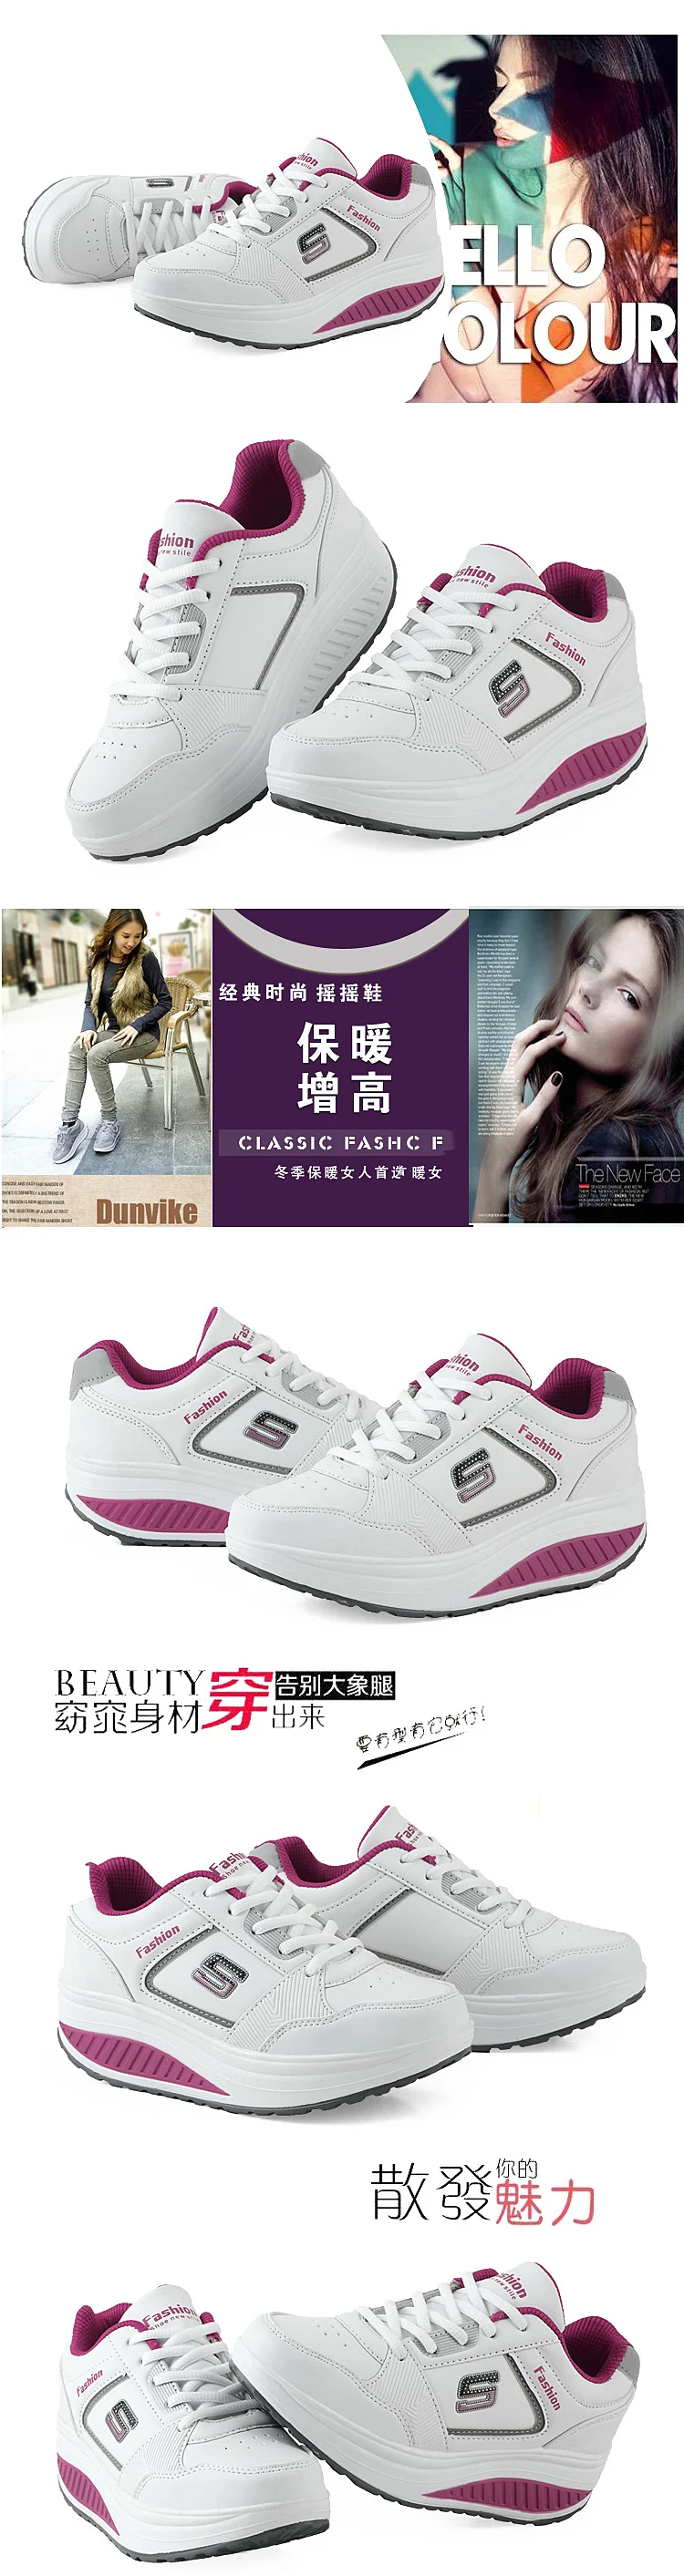 Женские кроссовки; прогулочная обувь; обувь на платформе для похудения; женская обувь для фитнеса; Прямая поставка; st41